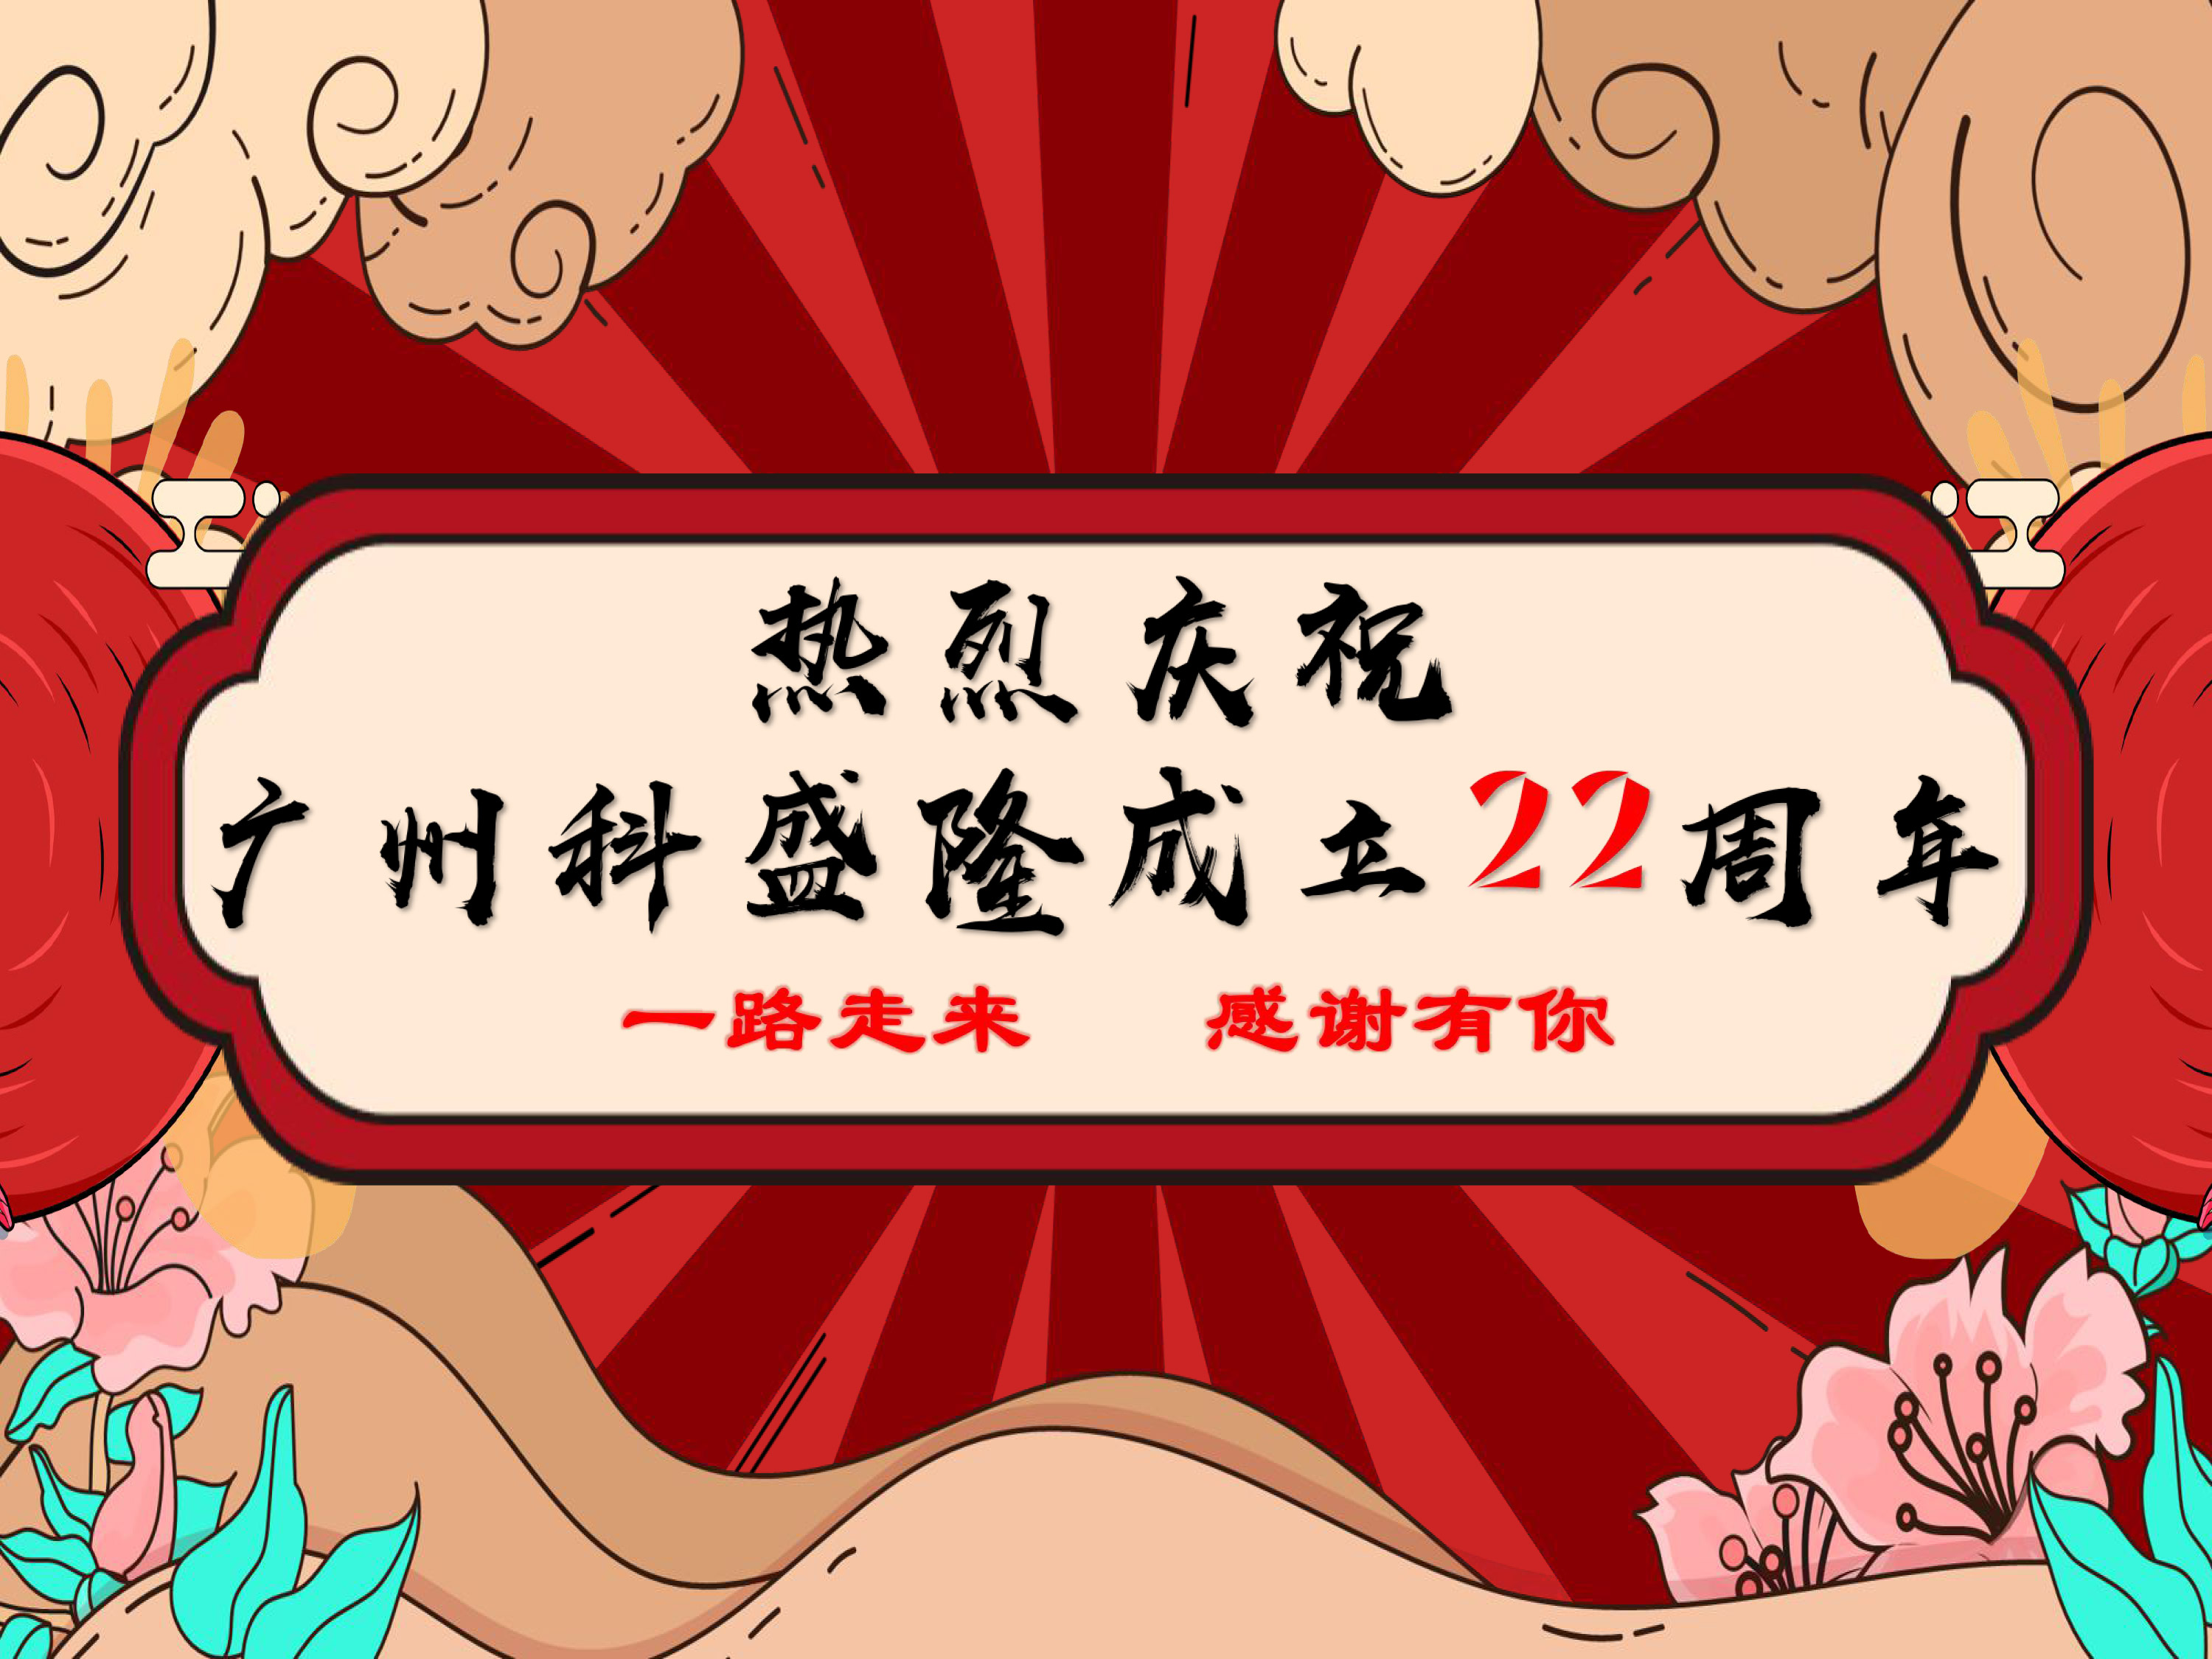 熱烈慶祝廣州科盛隆成立22周年 